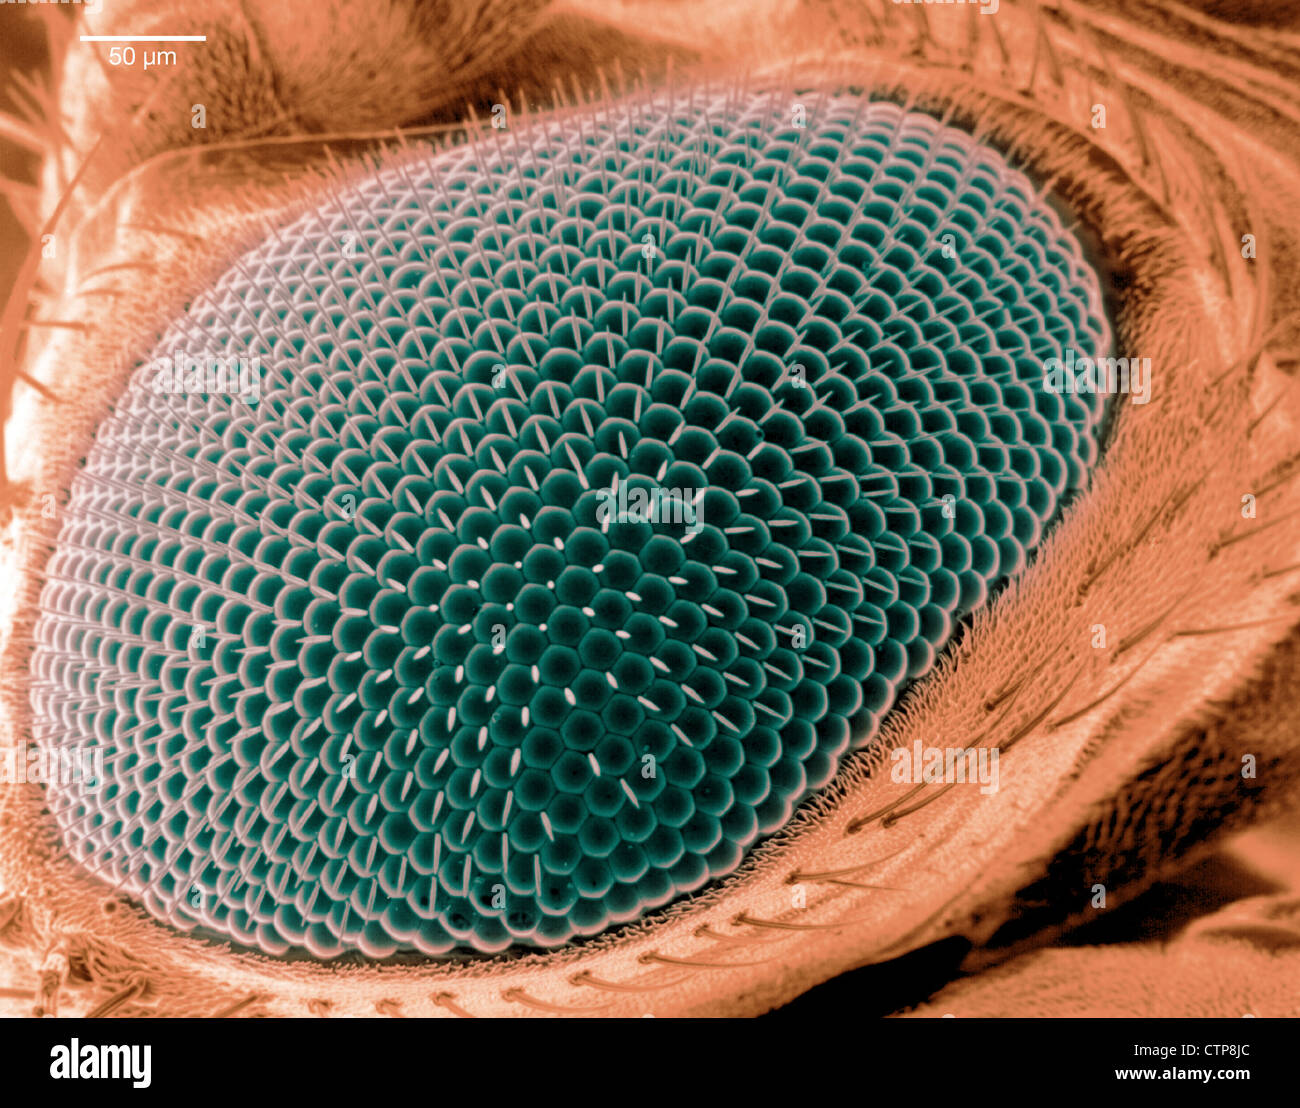 La scansione di immagine al microscopio elettronico di un occhio su una mosca della frutta. Foto Stock